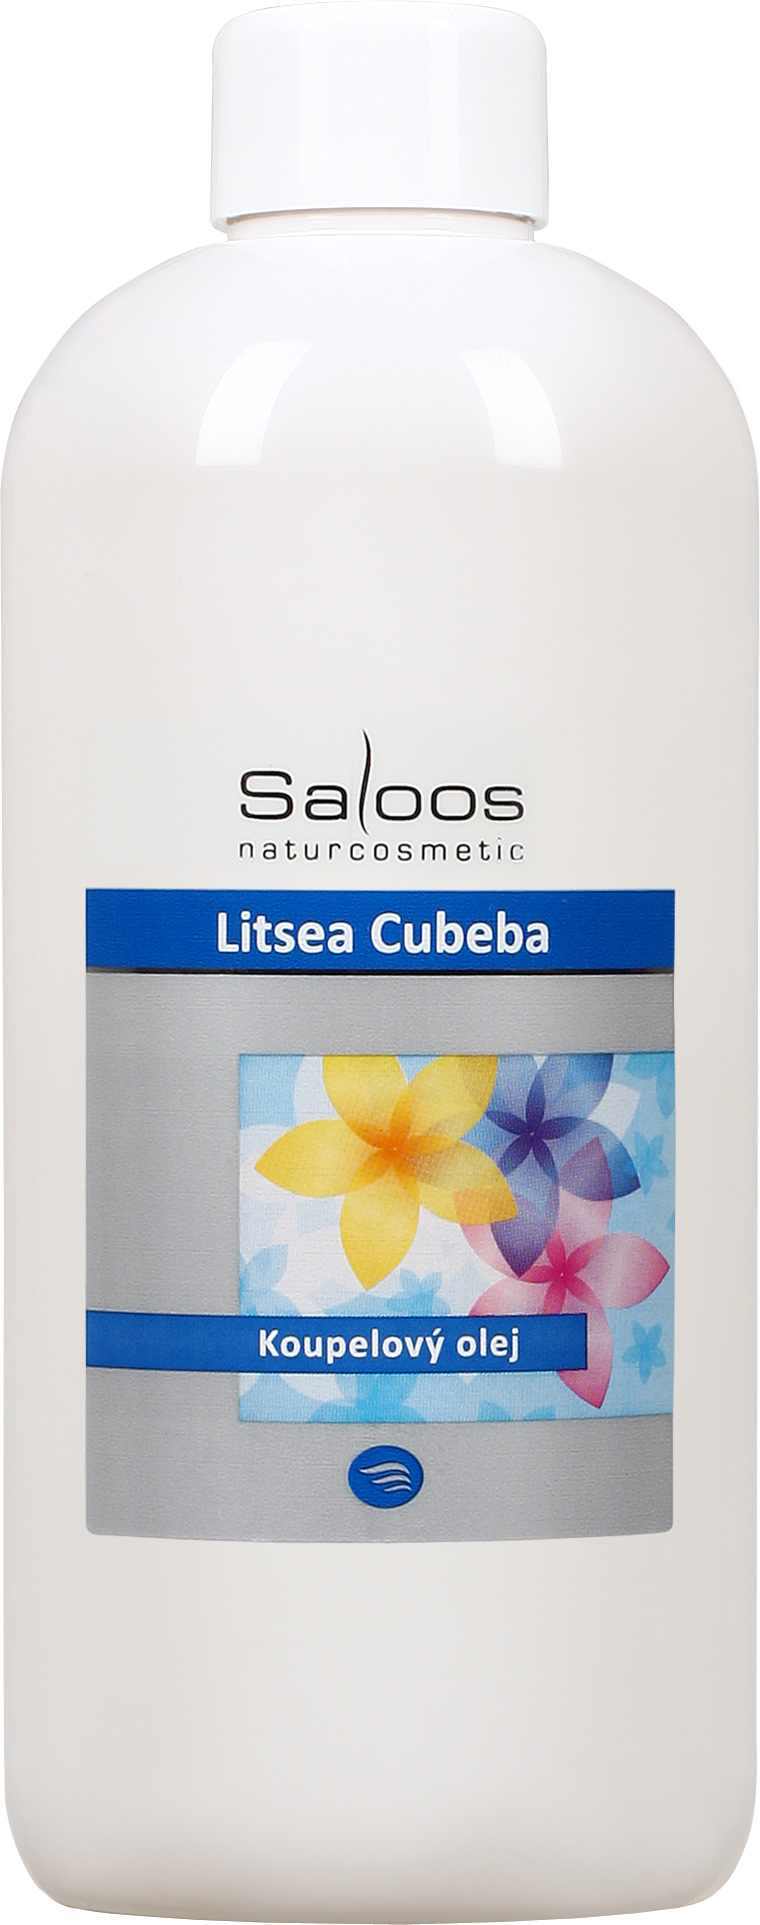 Saloos Litsea cubeba - koupelový olej Balení: 1000 ml